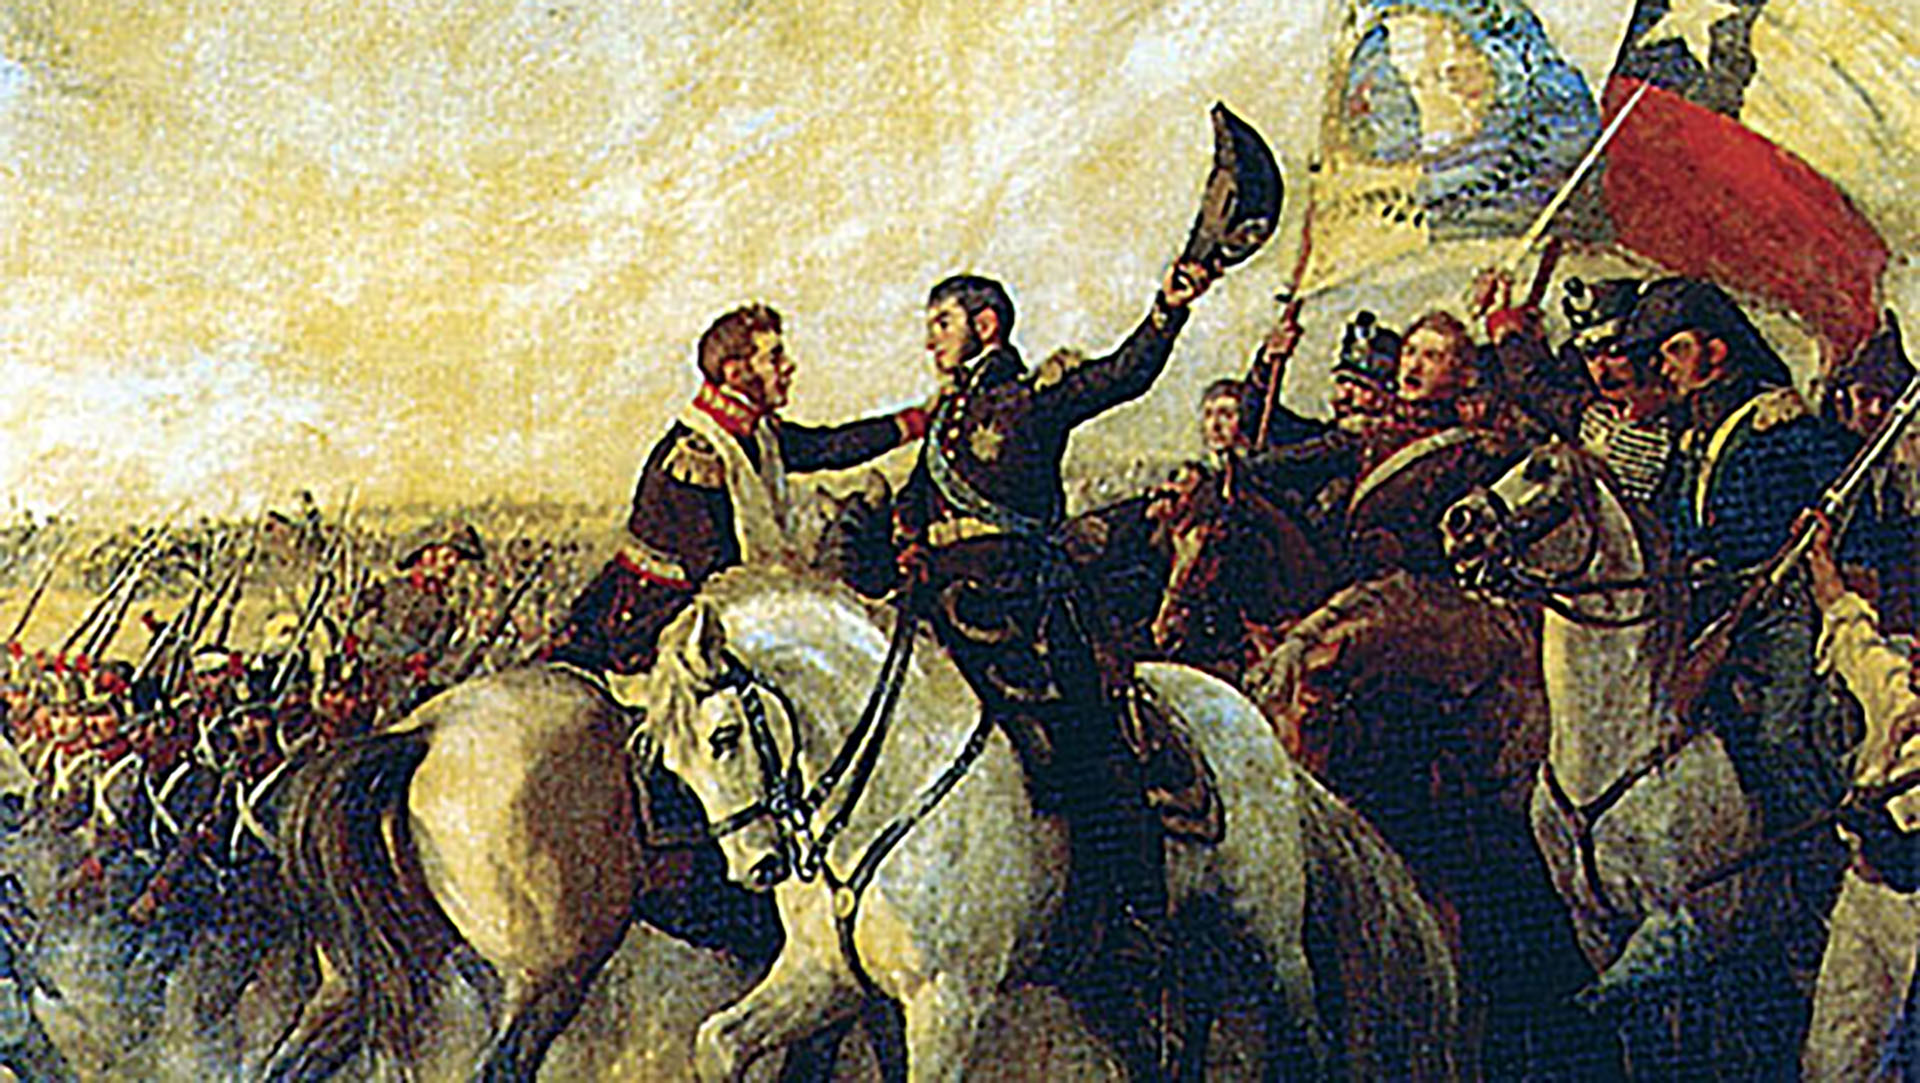 El abrazo de San Martn y O'Higgins luego de la victoria en la batalla de Maip que marc la derrota definitiva de los realistas en Chile